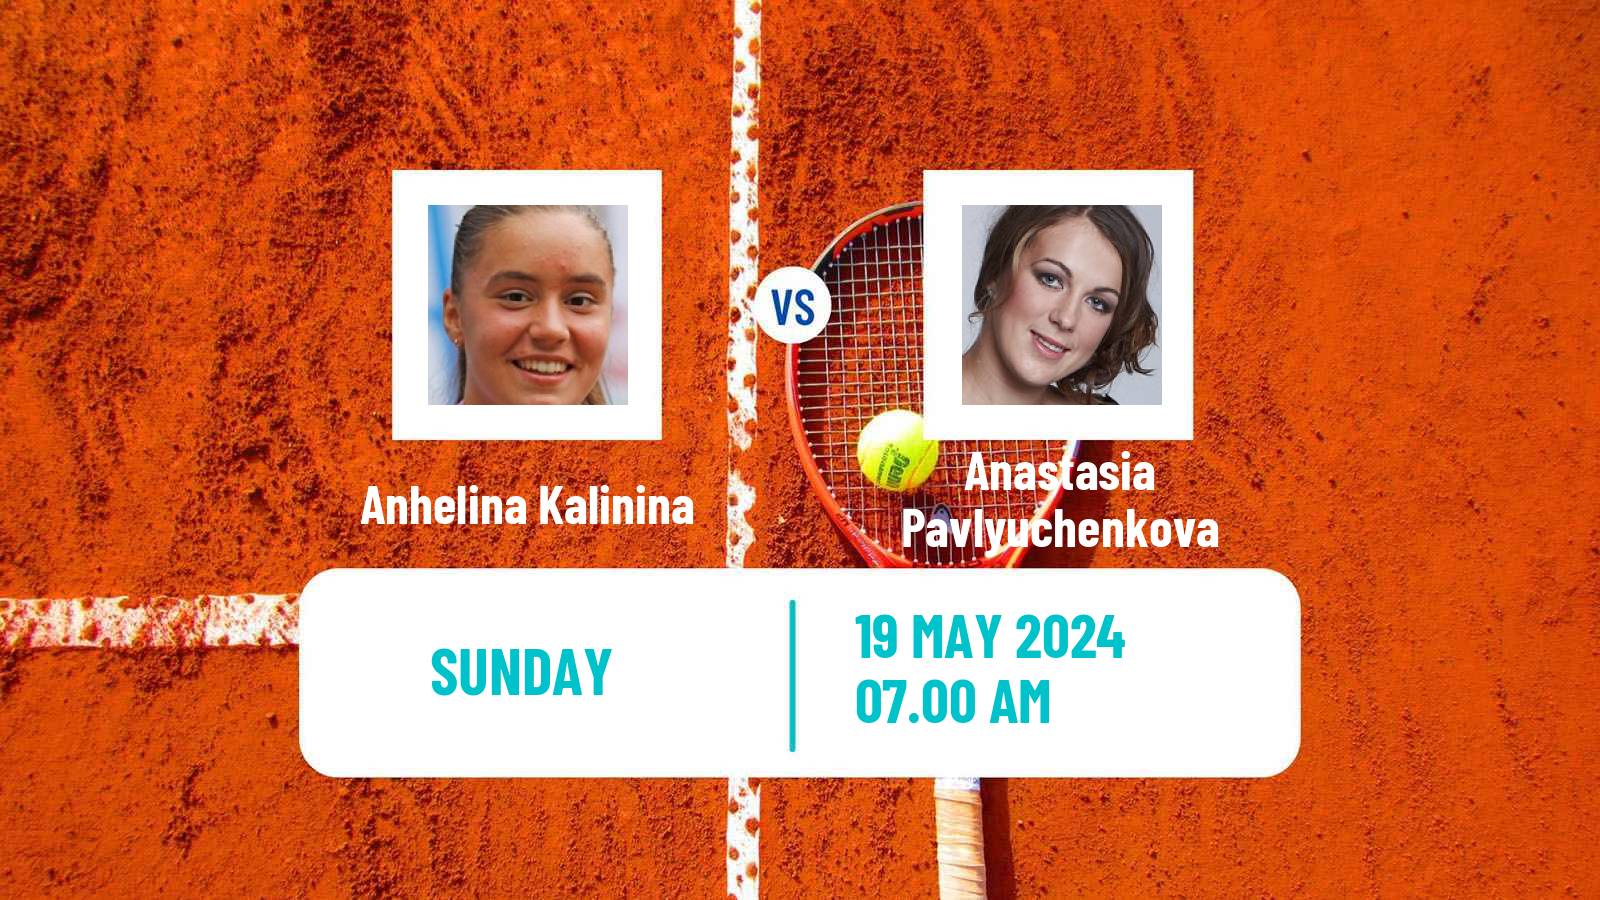 Tennis WTA Strasbourg Anhelina Kalinina - Anastasia Pavlyuchenkova